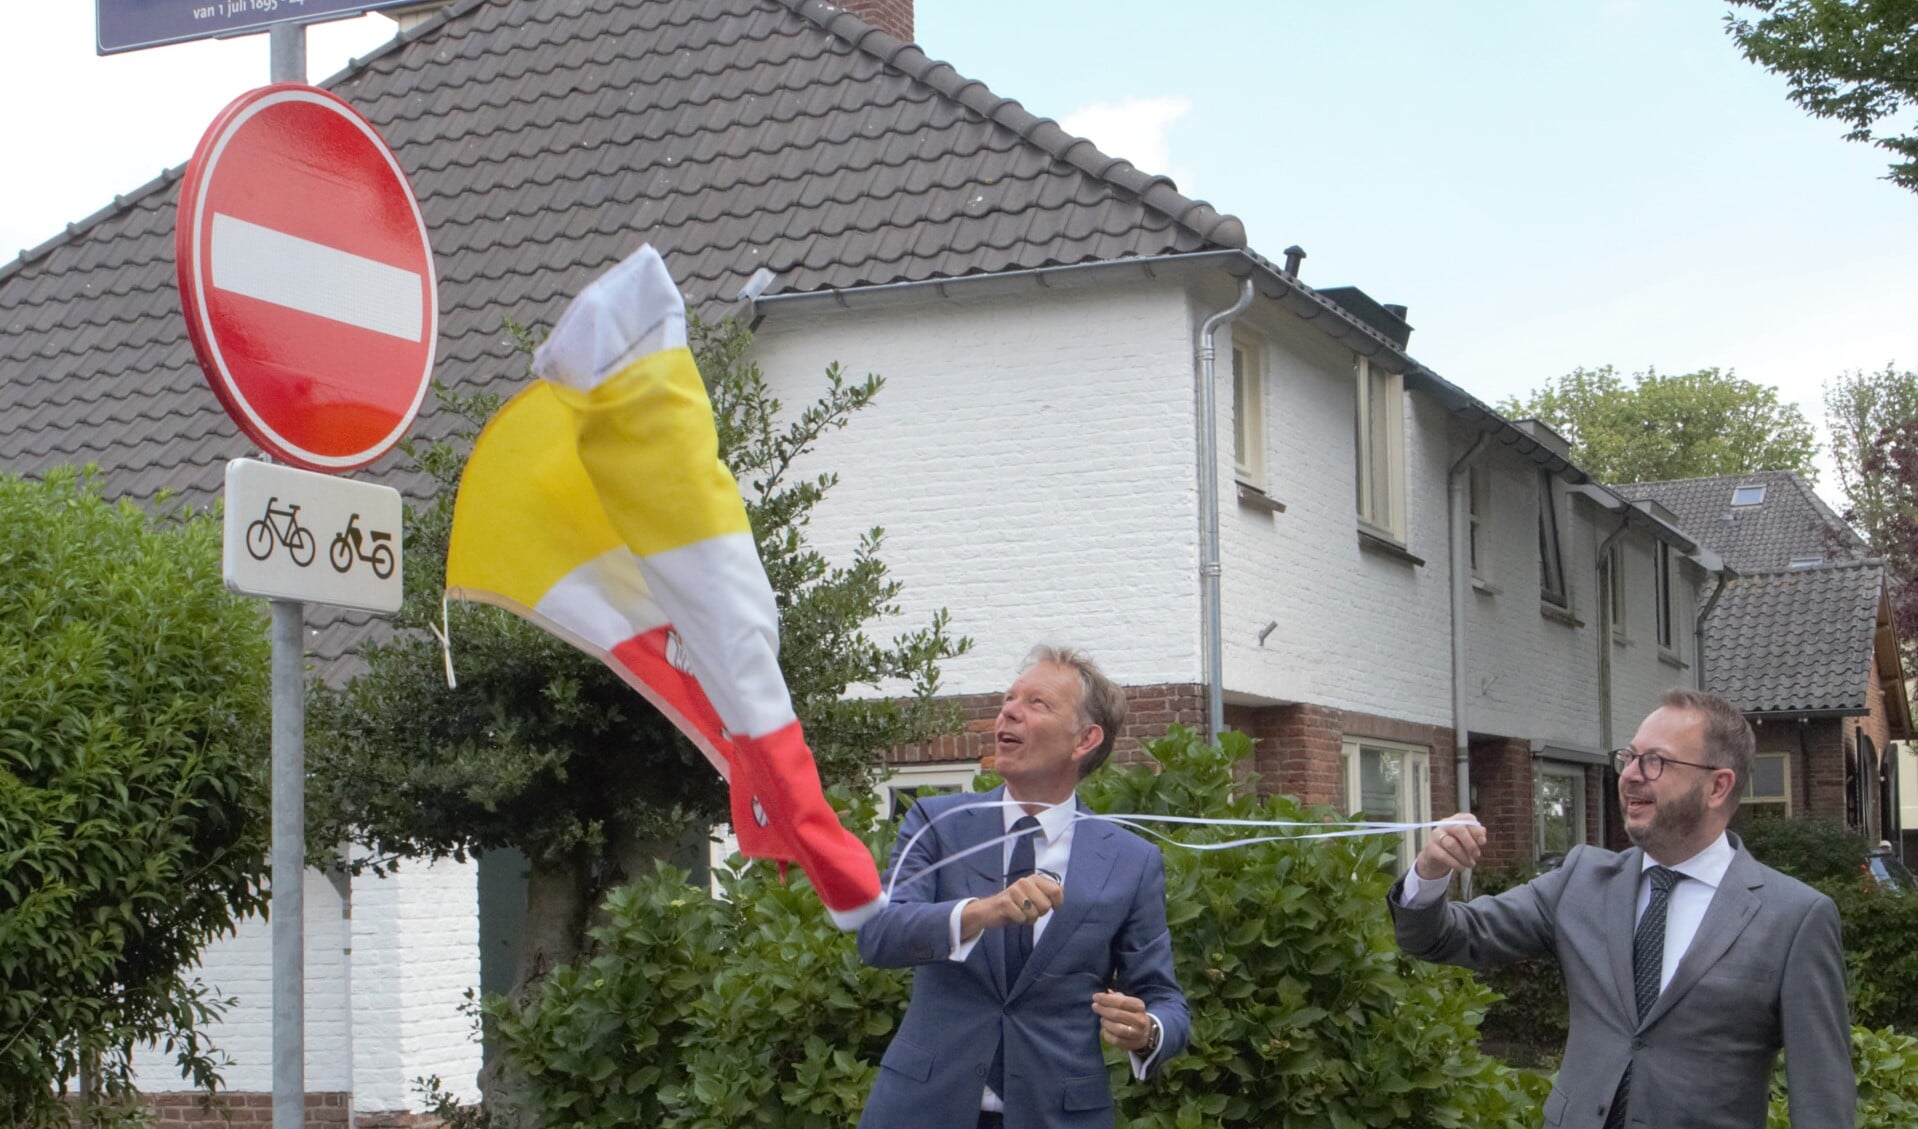 Burgemeester Van Benthem van Eemnes onthulde het eerste nieuwe straatnaambord samen met burgemeester Röell van Baarn. 